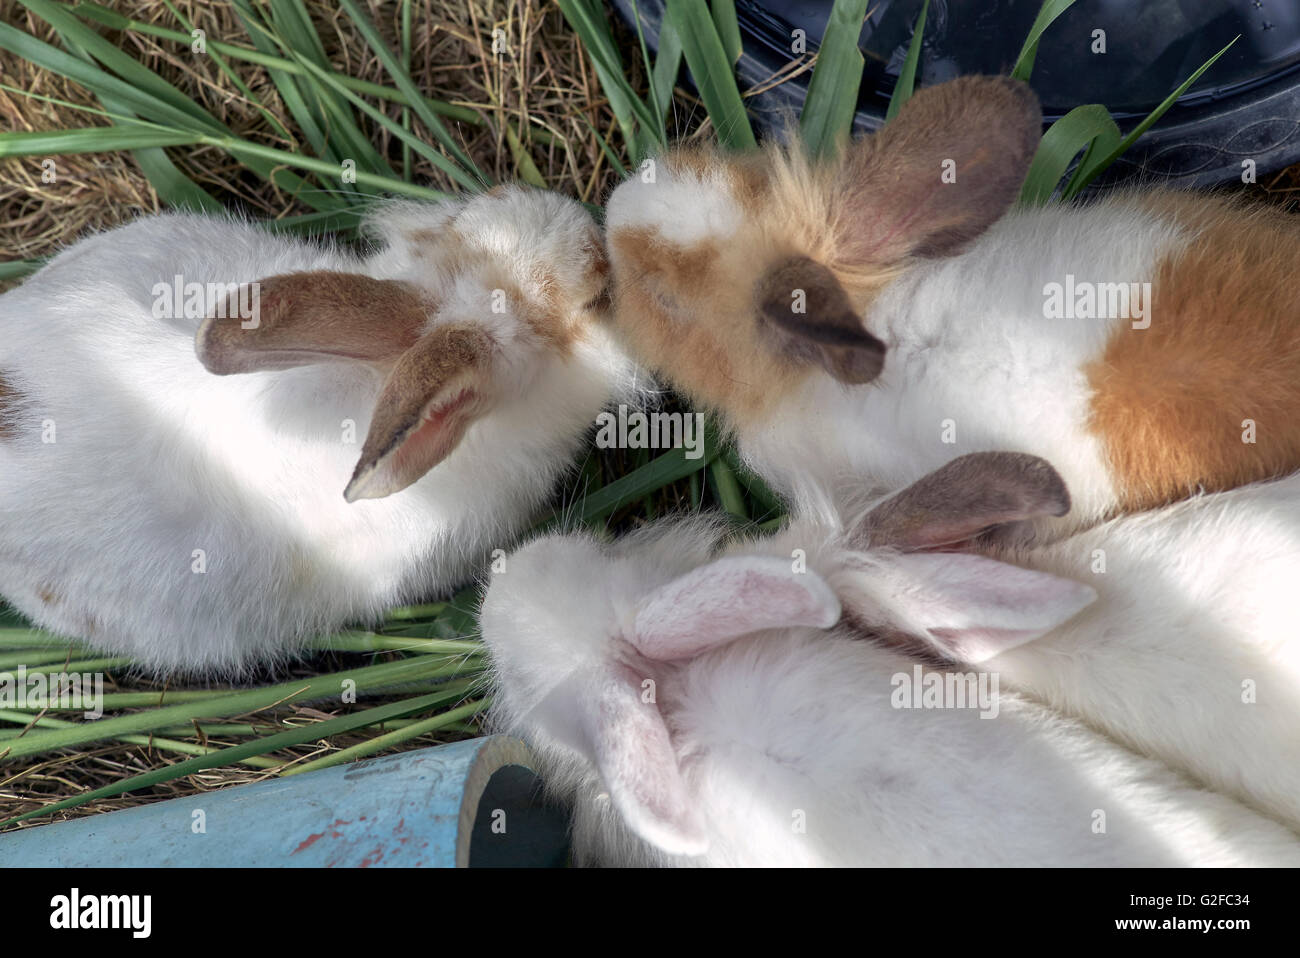 Groupe de lapins alimentation Banque D'Images